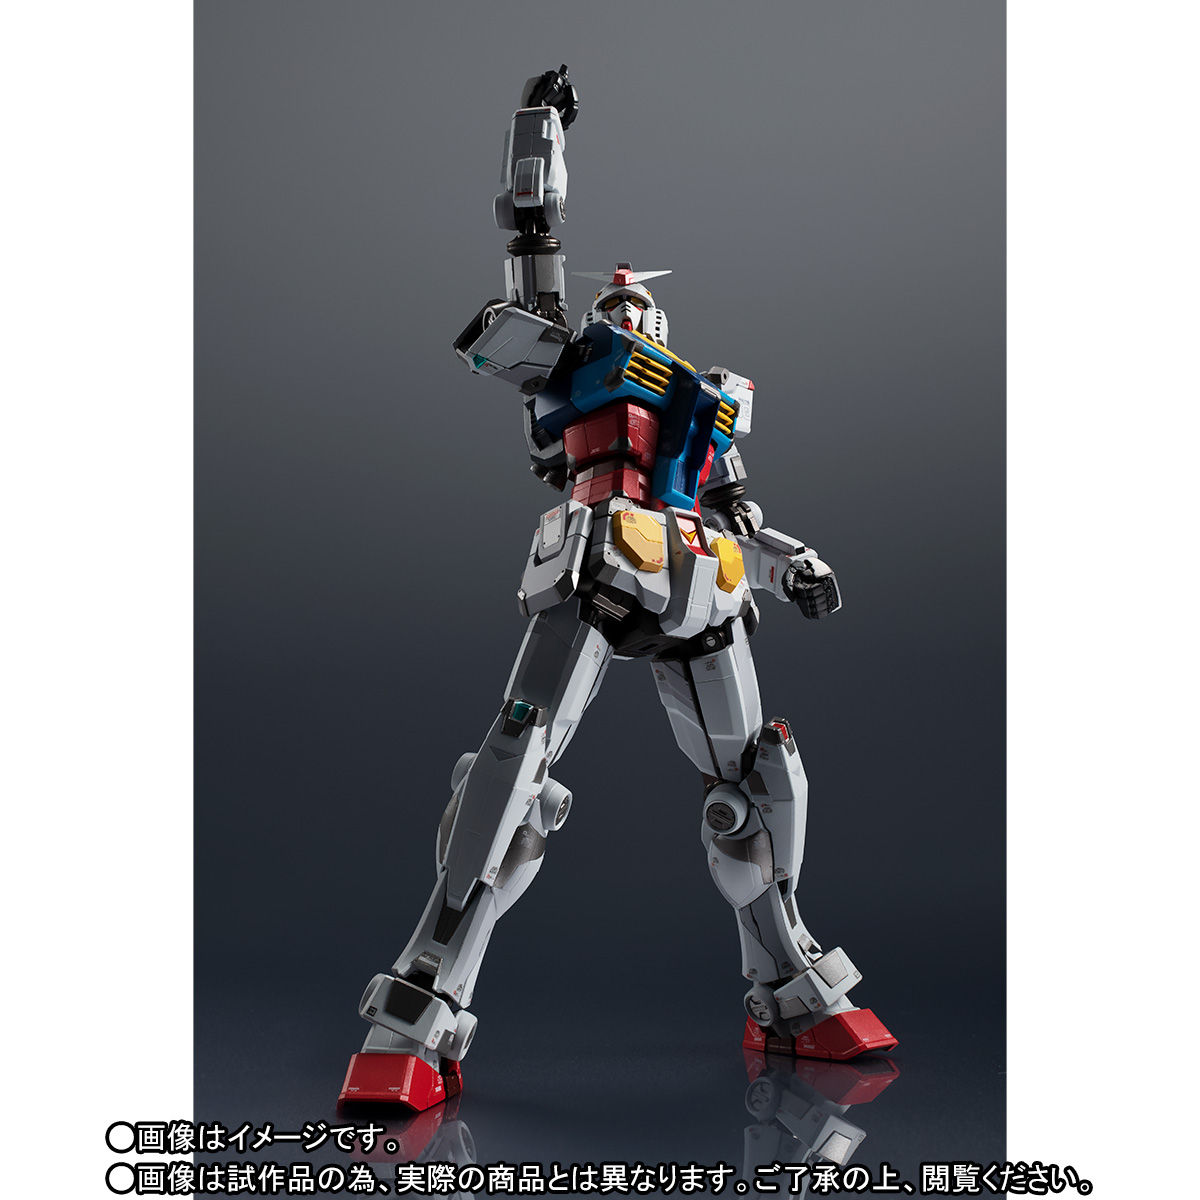 Chogokin RX-78F00 Gundam